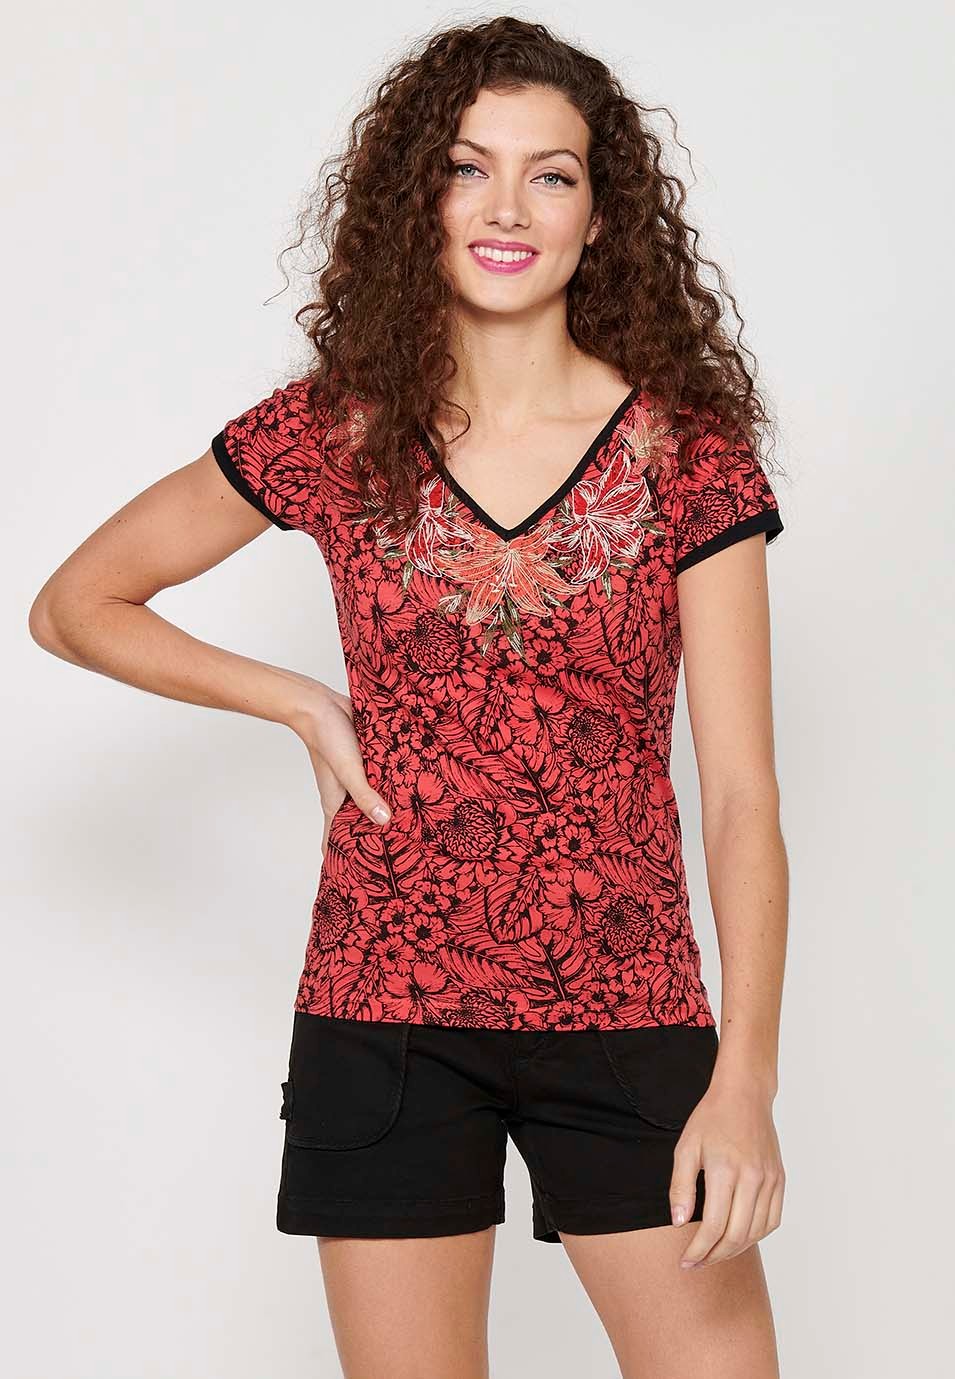 Camiseta de manga corta de Algodón con Cuello pico y Estampado floral con Detalles bordados de Color Coral para Mujer